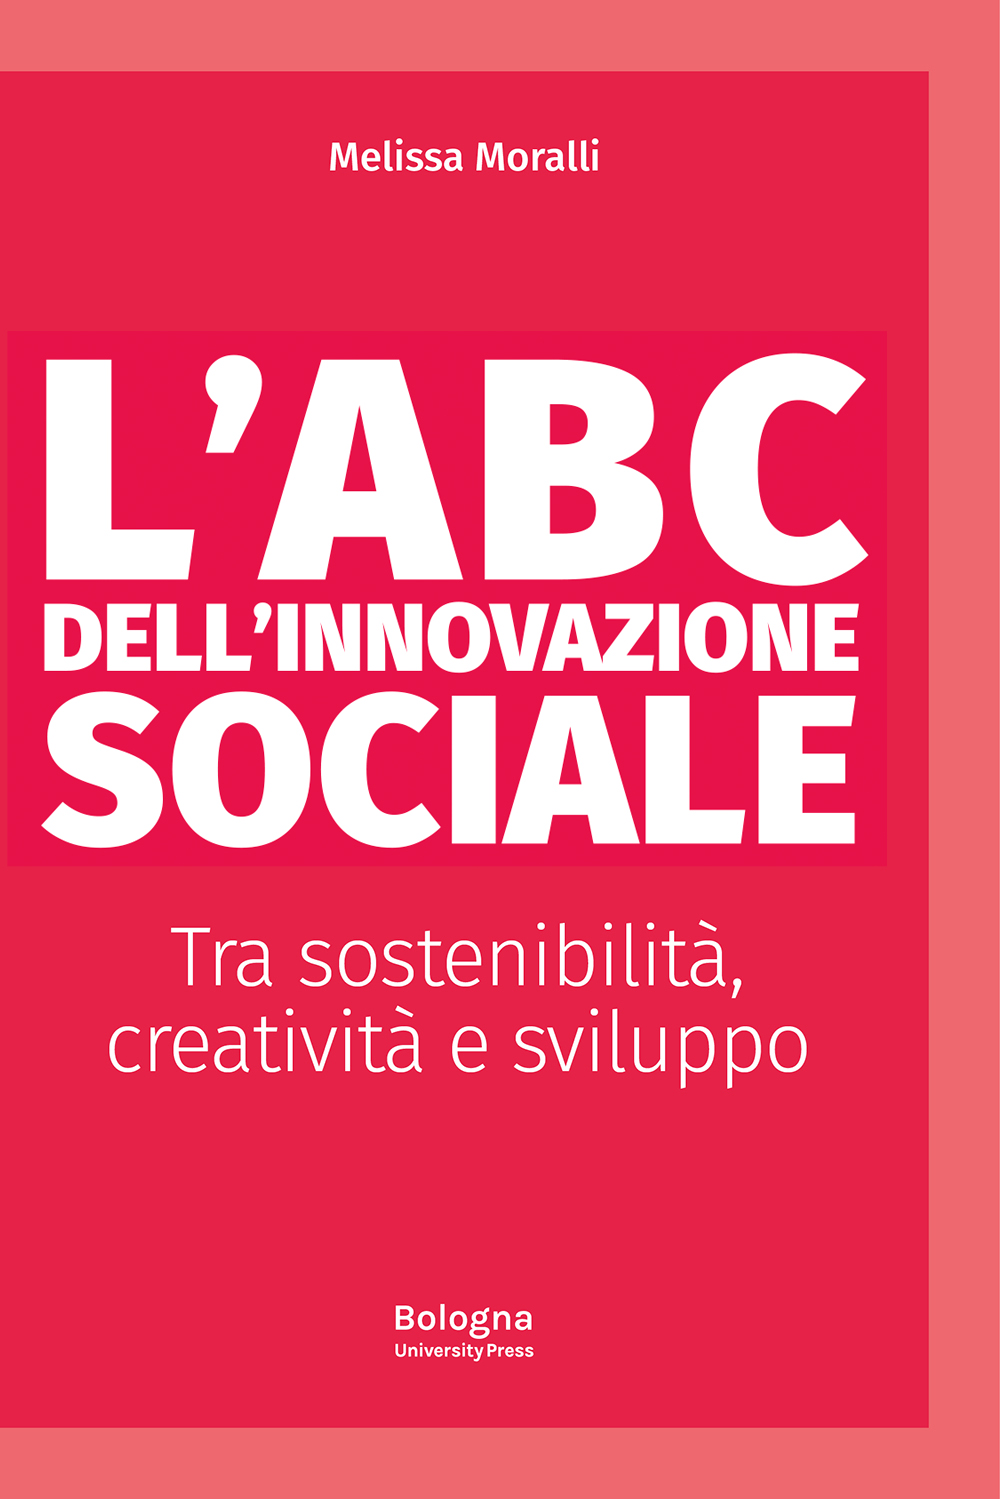 L’abc dell’innovazione sociale - Bologna University Press